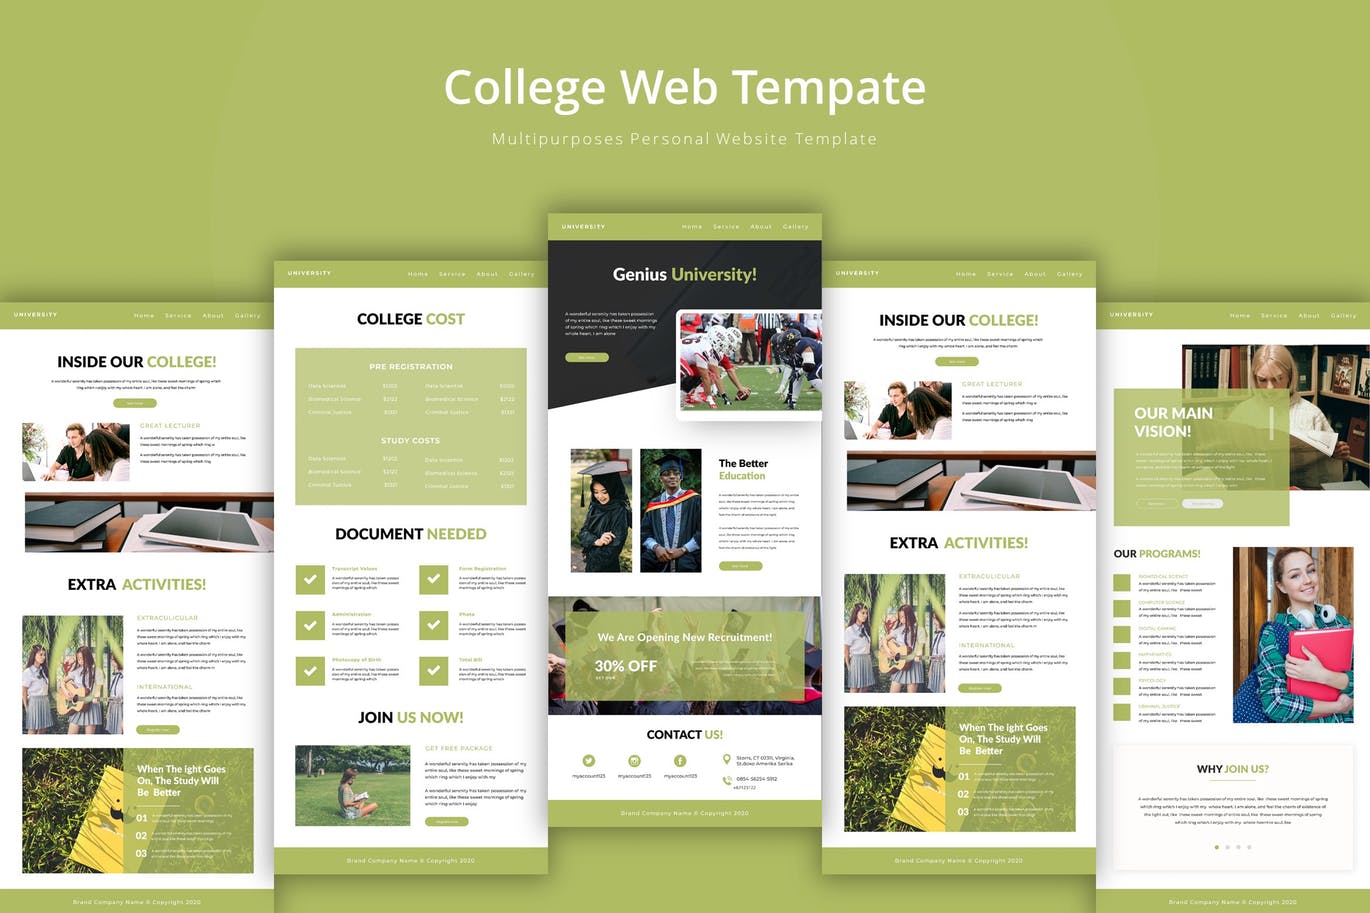 大学/学院教育网站设计第一素材精选模板 University Web Template插图